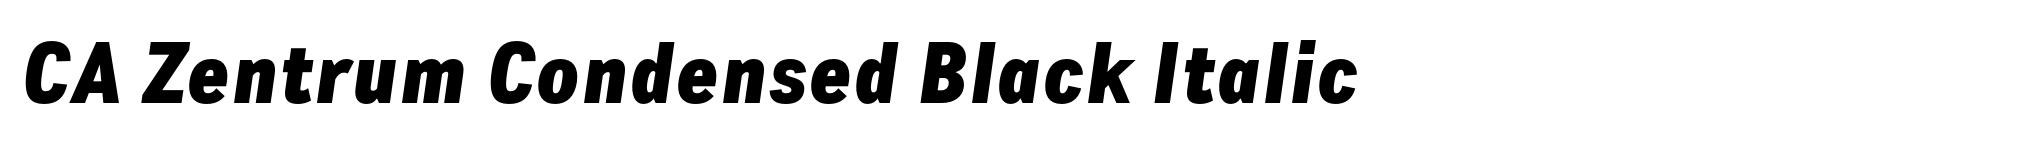 CA Zentrum Condensed Black Italic image